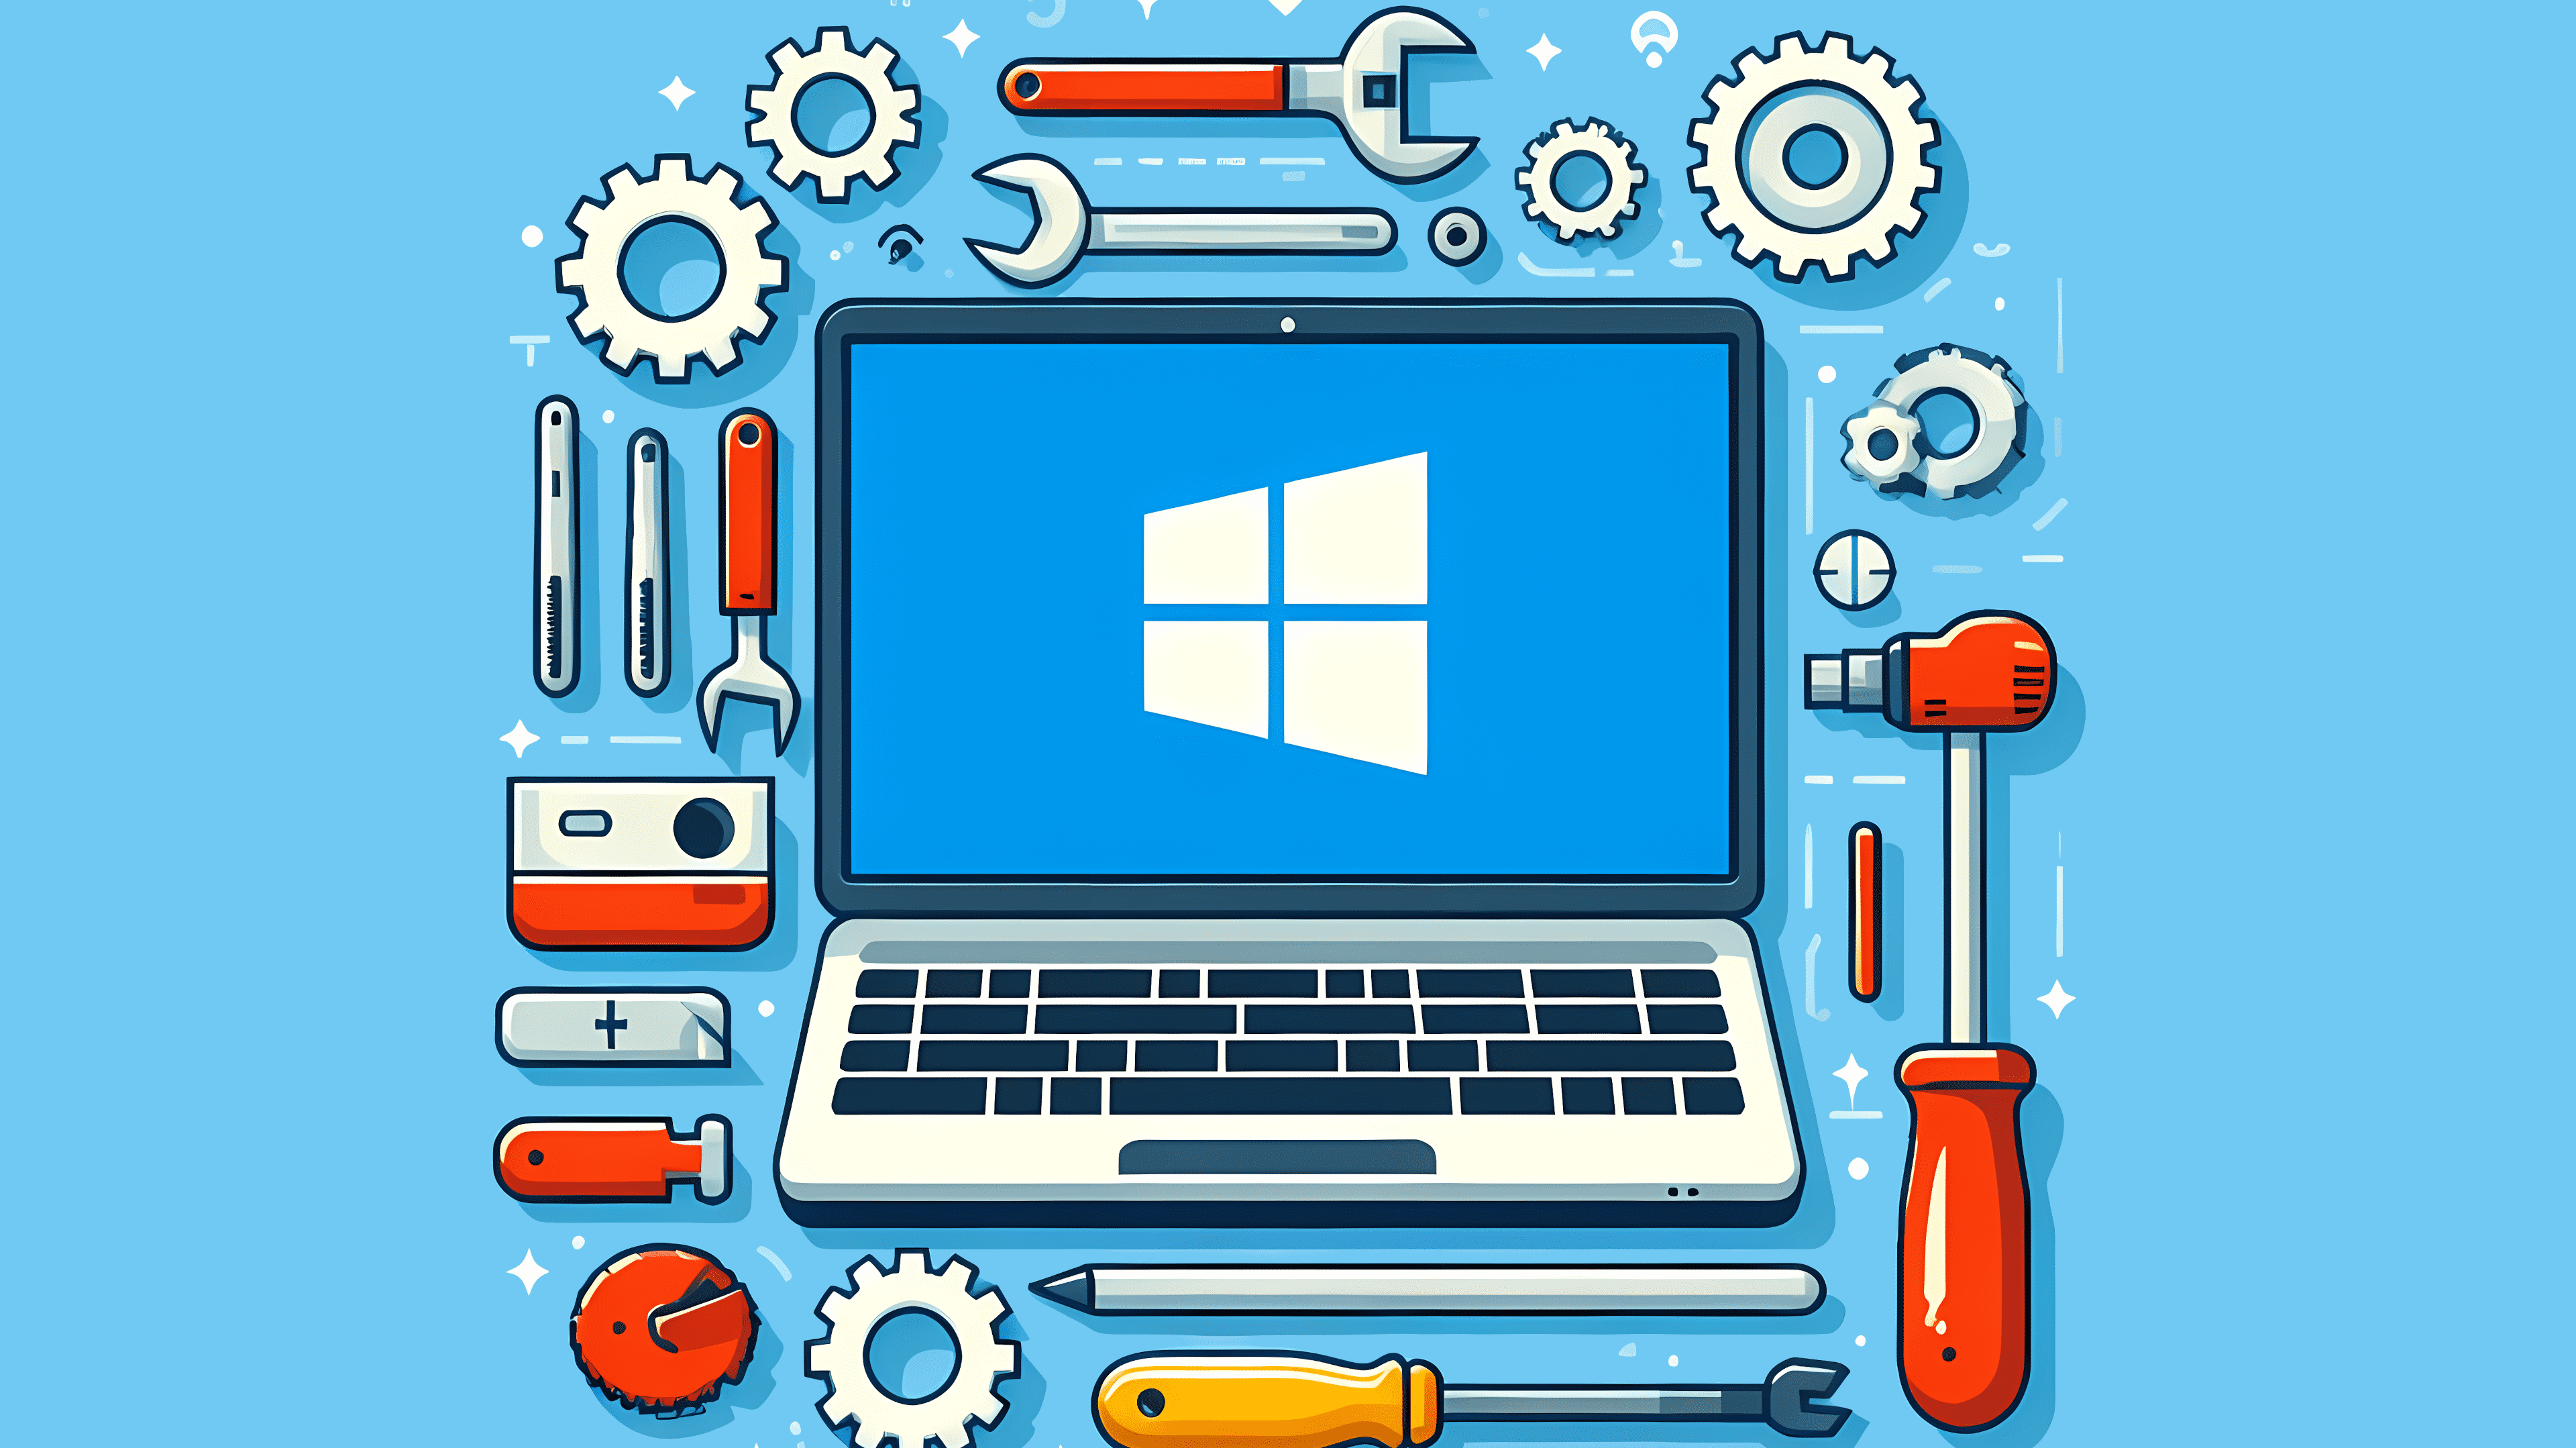 Stilisiertes Bild: Ein Laptop mit Windows-Logo auf einer Werkbank, umgeben von Werkzeugen und Zahrädern